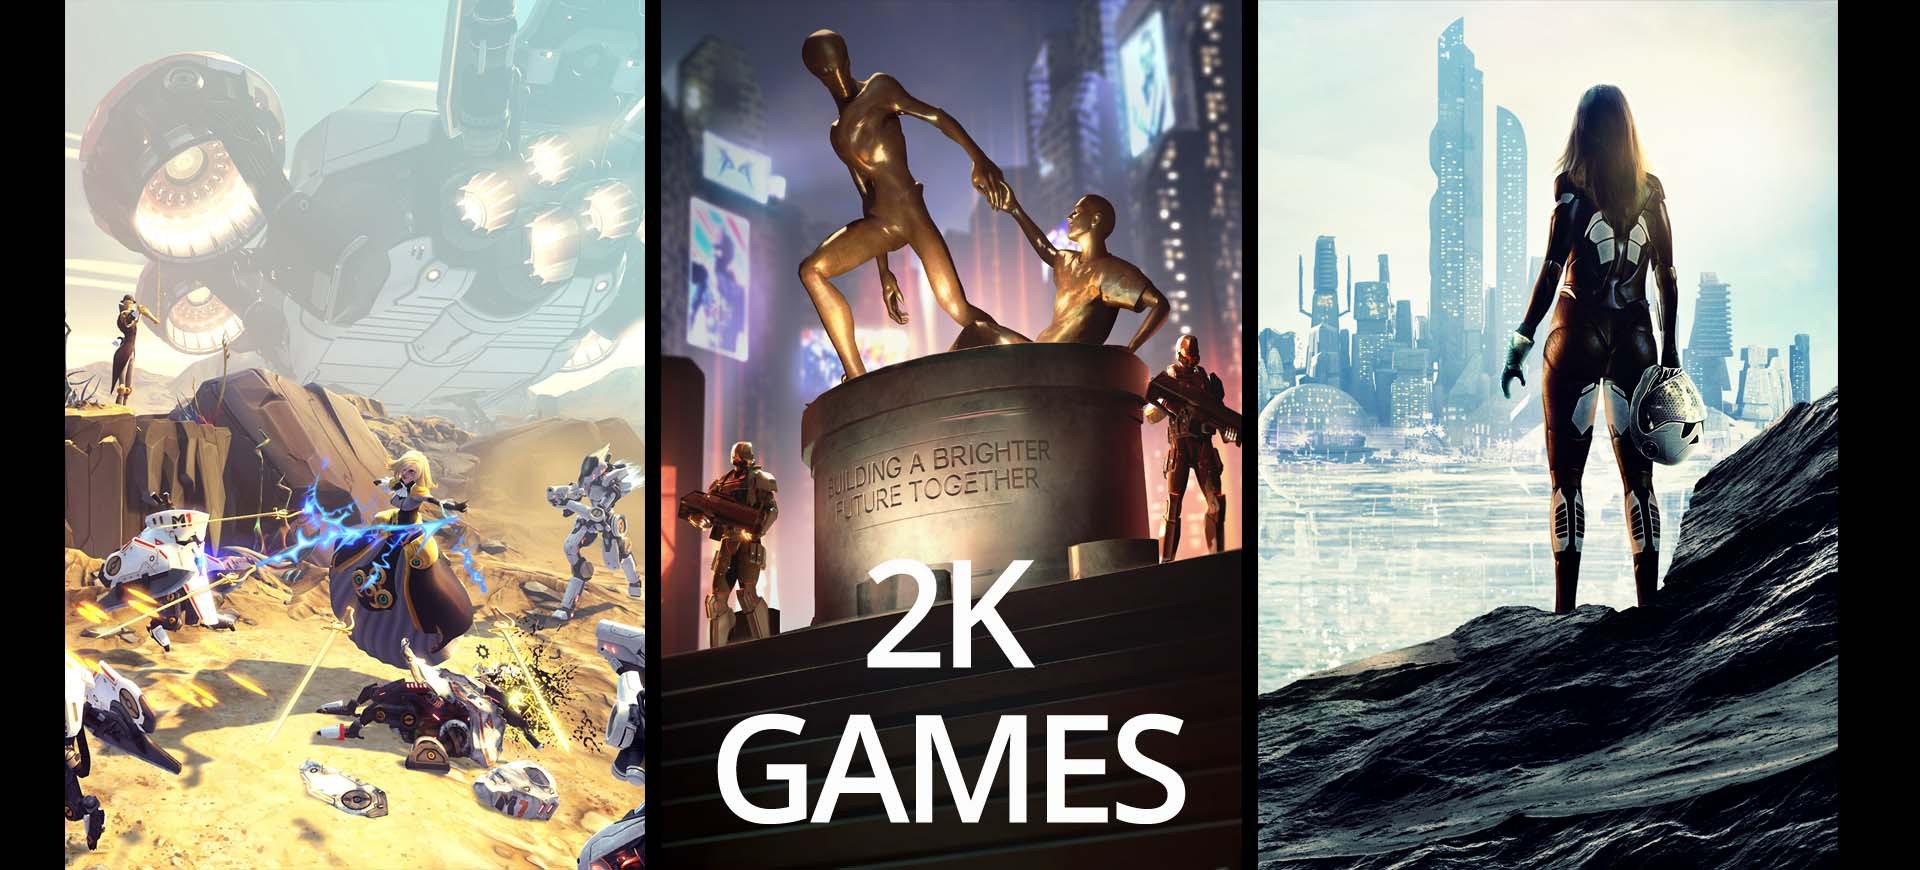 E3 2015: 2K Games - "Vẫn có thể tin được"!